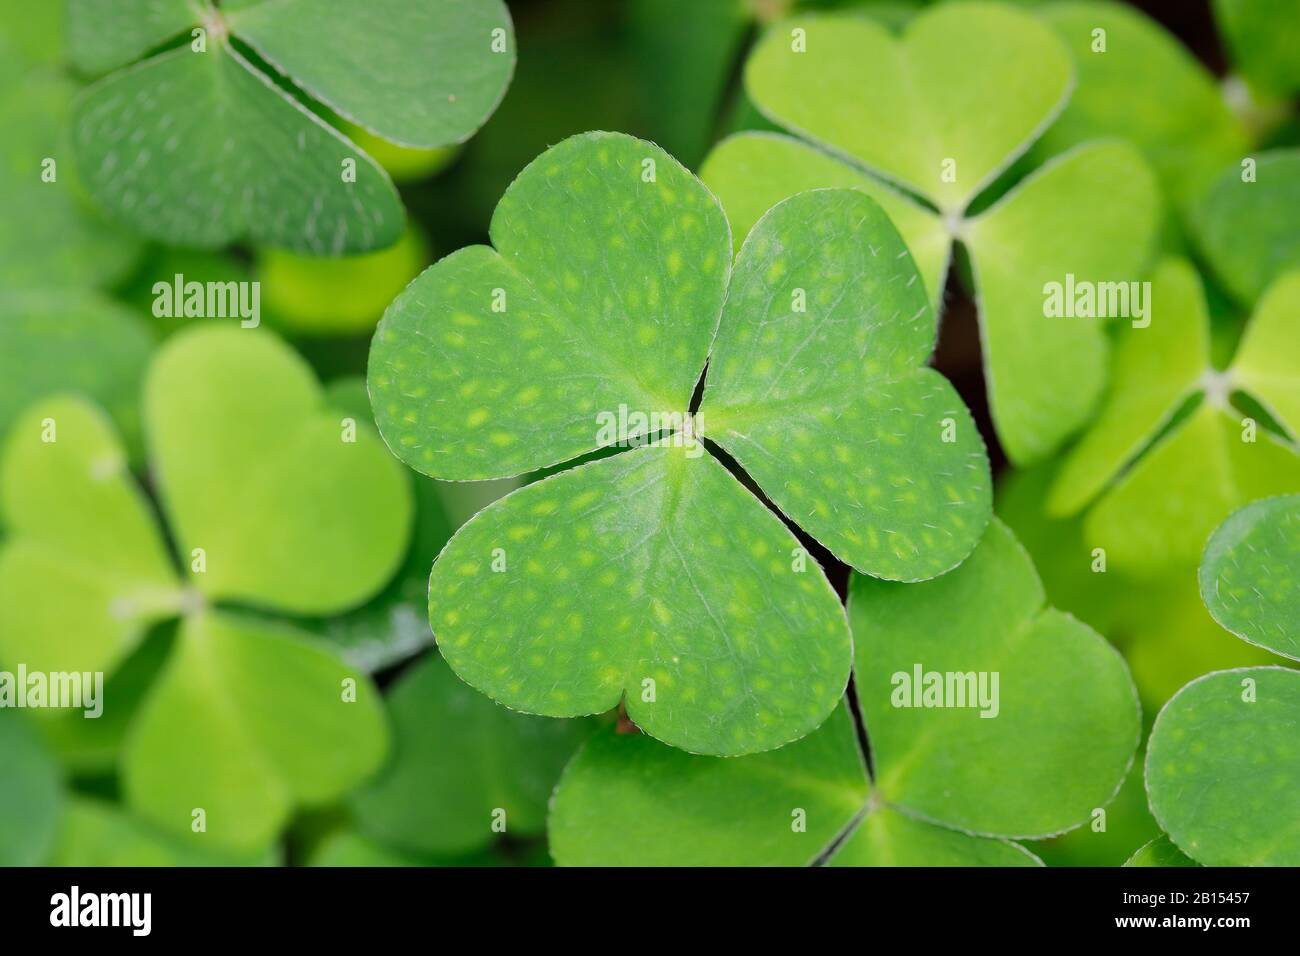 Oseille de bois commune, oseille de bois, shamrock irlandais (Oxalis acetosella), feuilles avec des folioles en forme de coeur, Suisse Banque D'Images